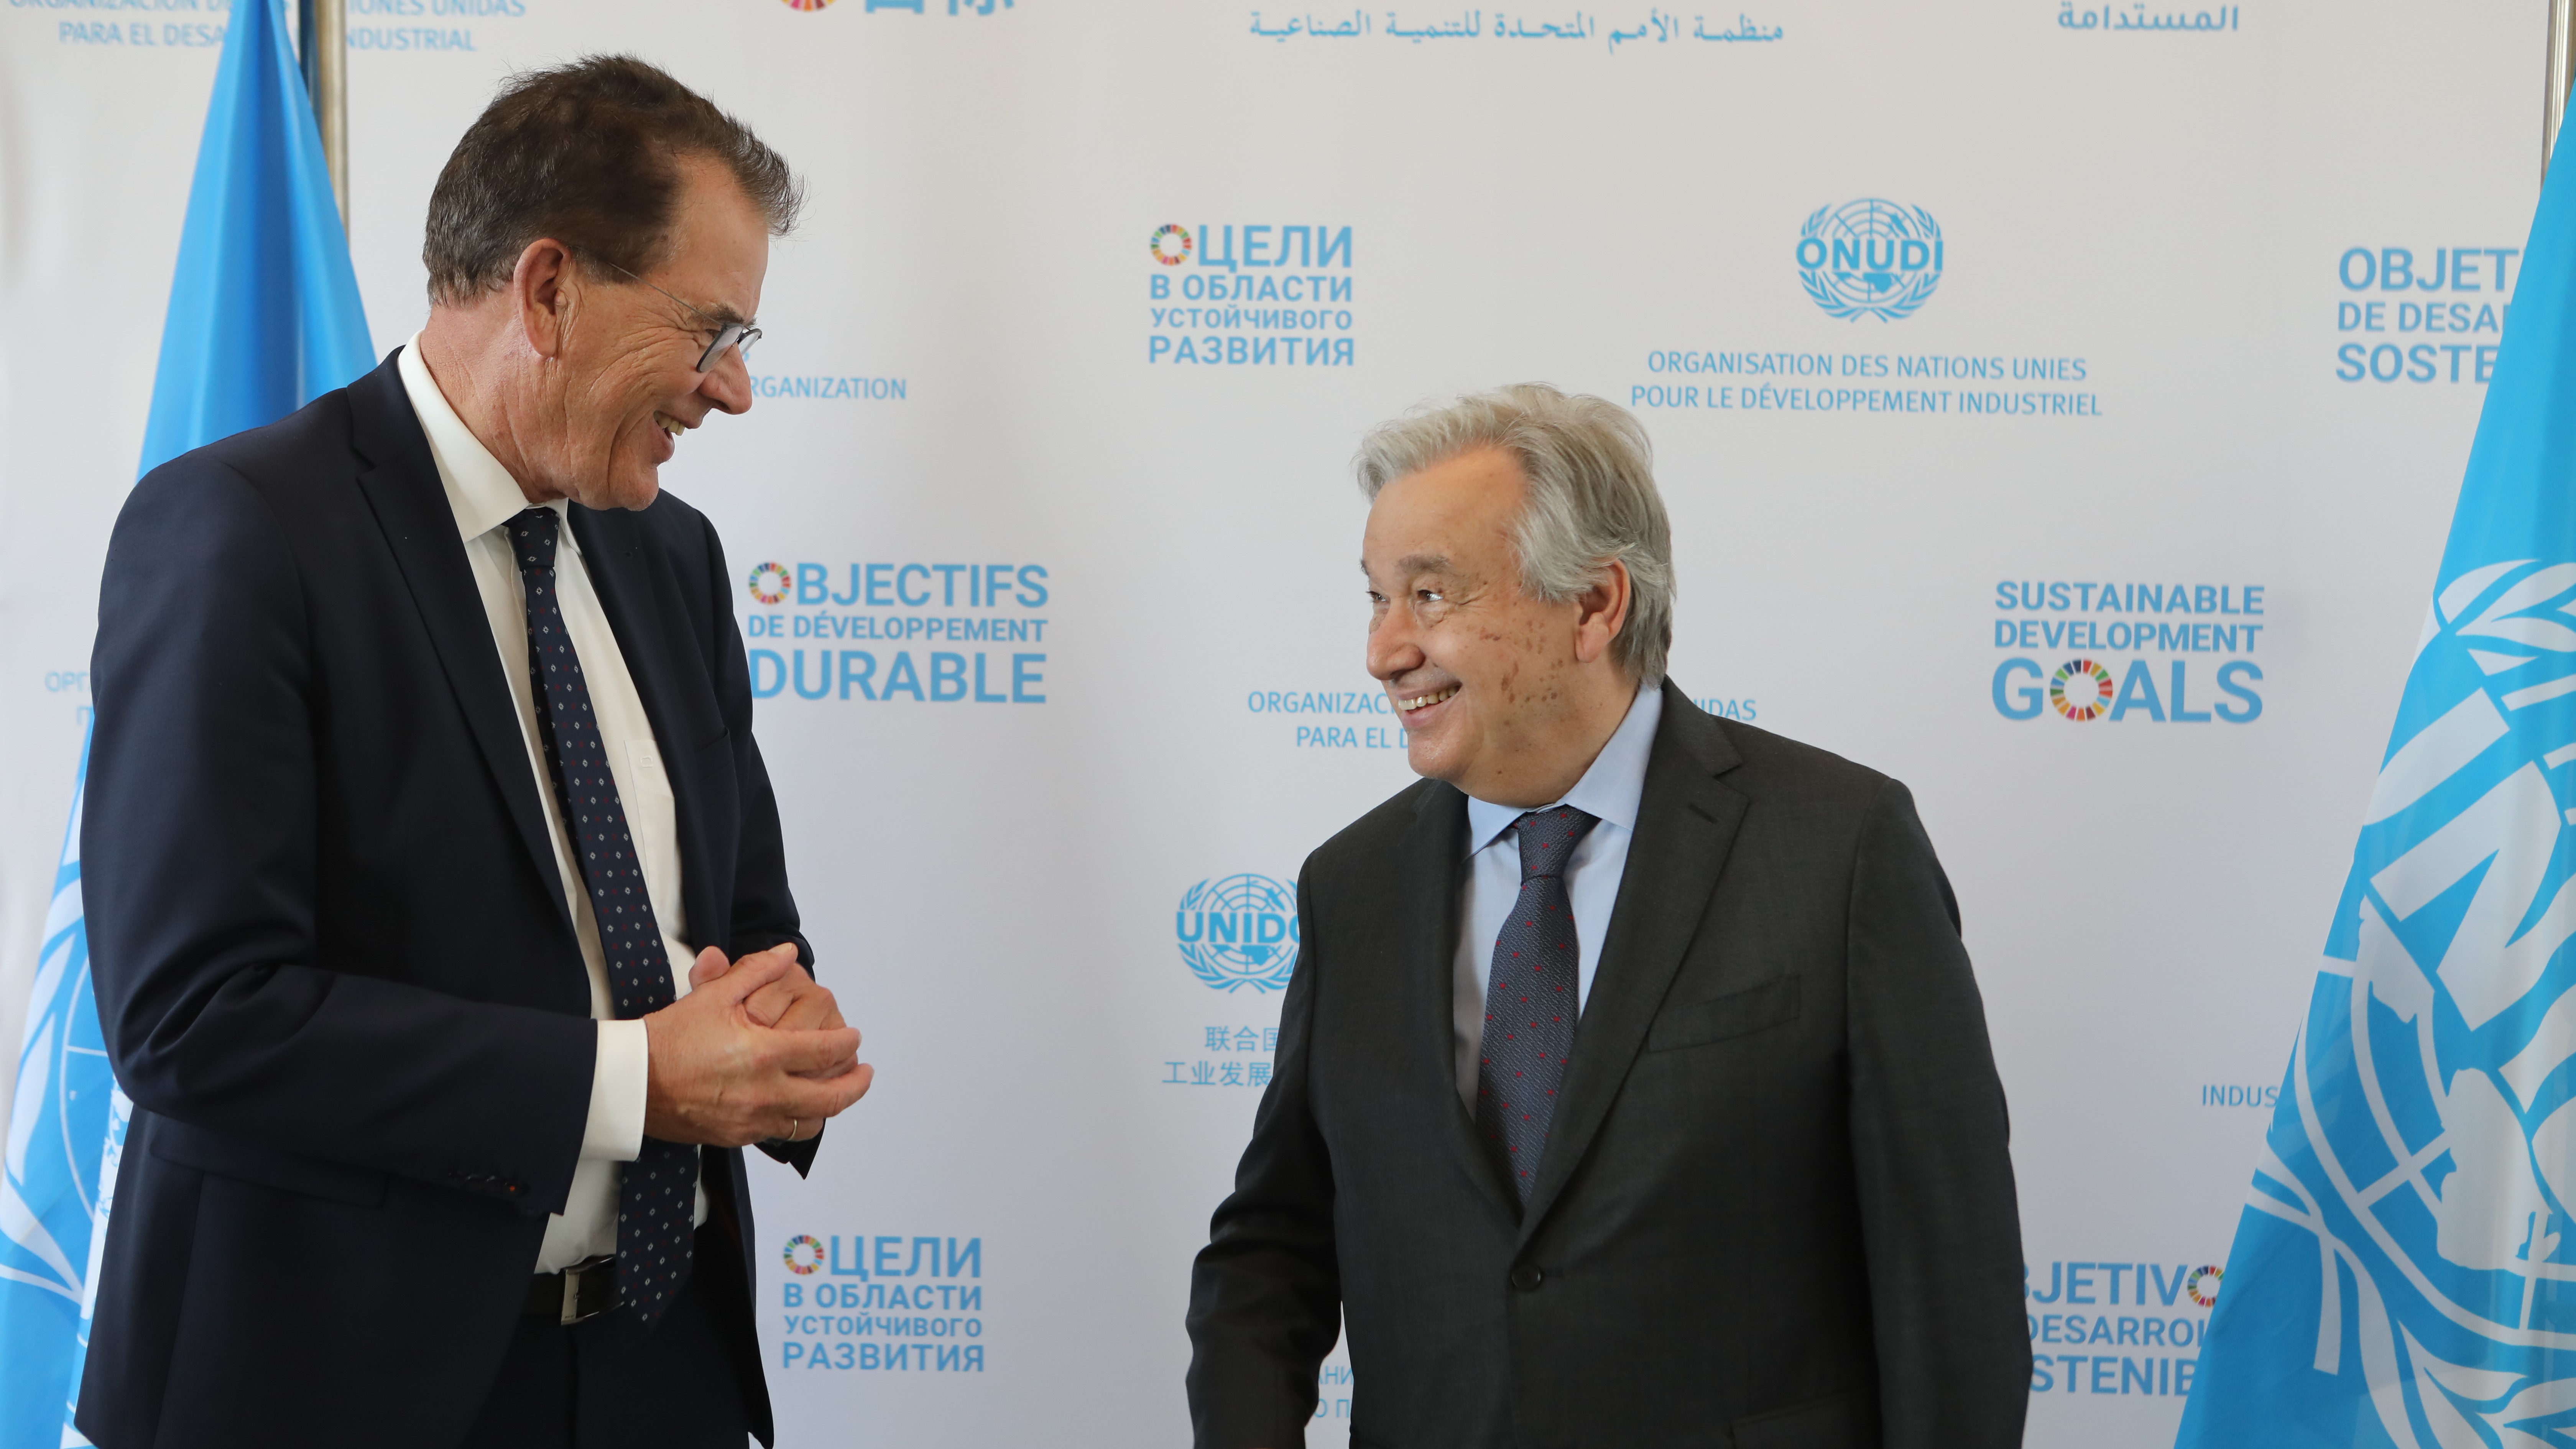 Director General met Antonio Guterres